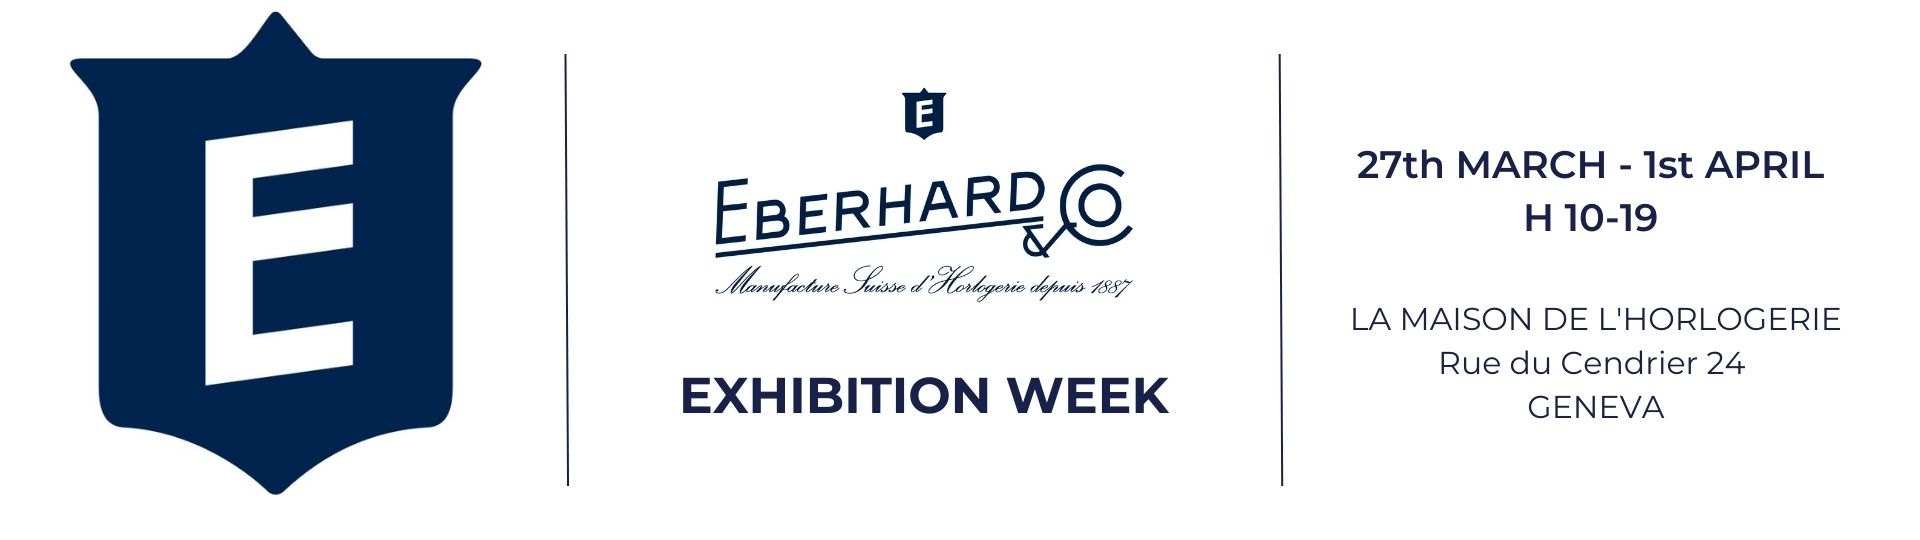 EBERHARD & CO. EXHIBITION WEEK